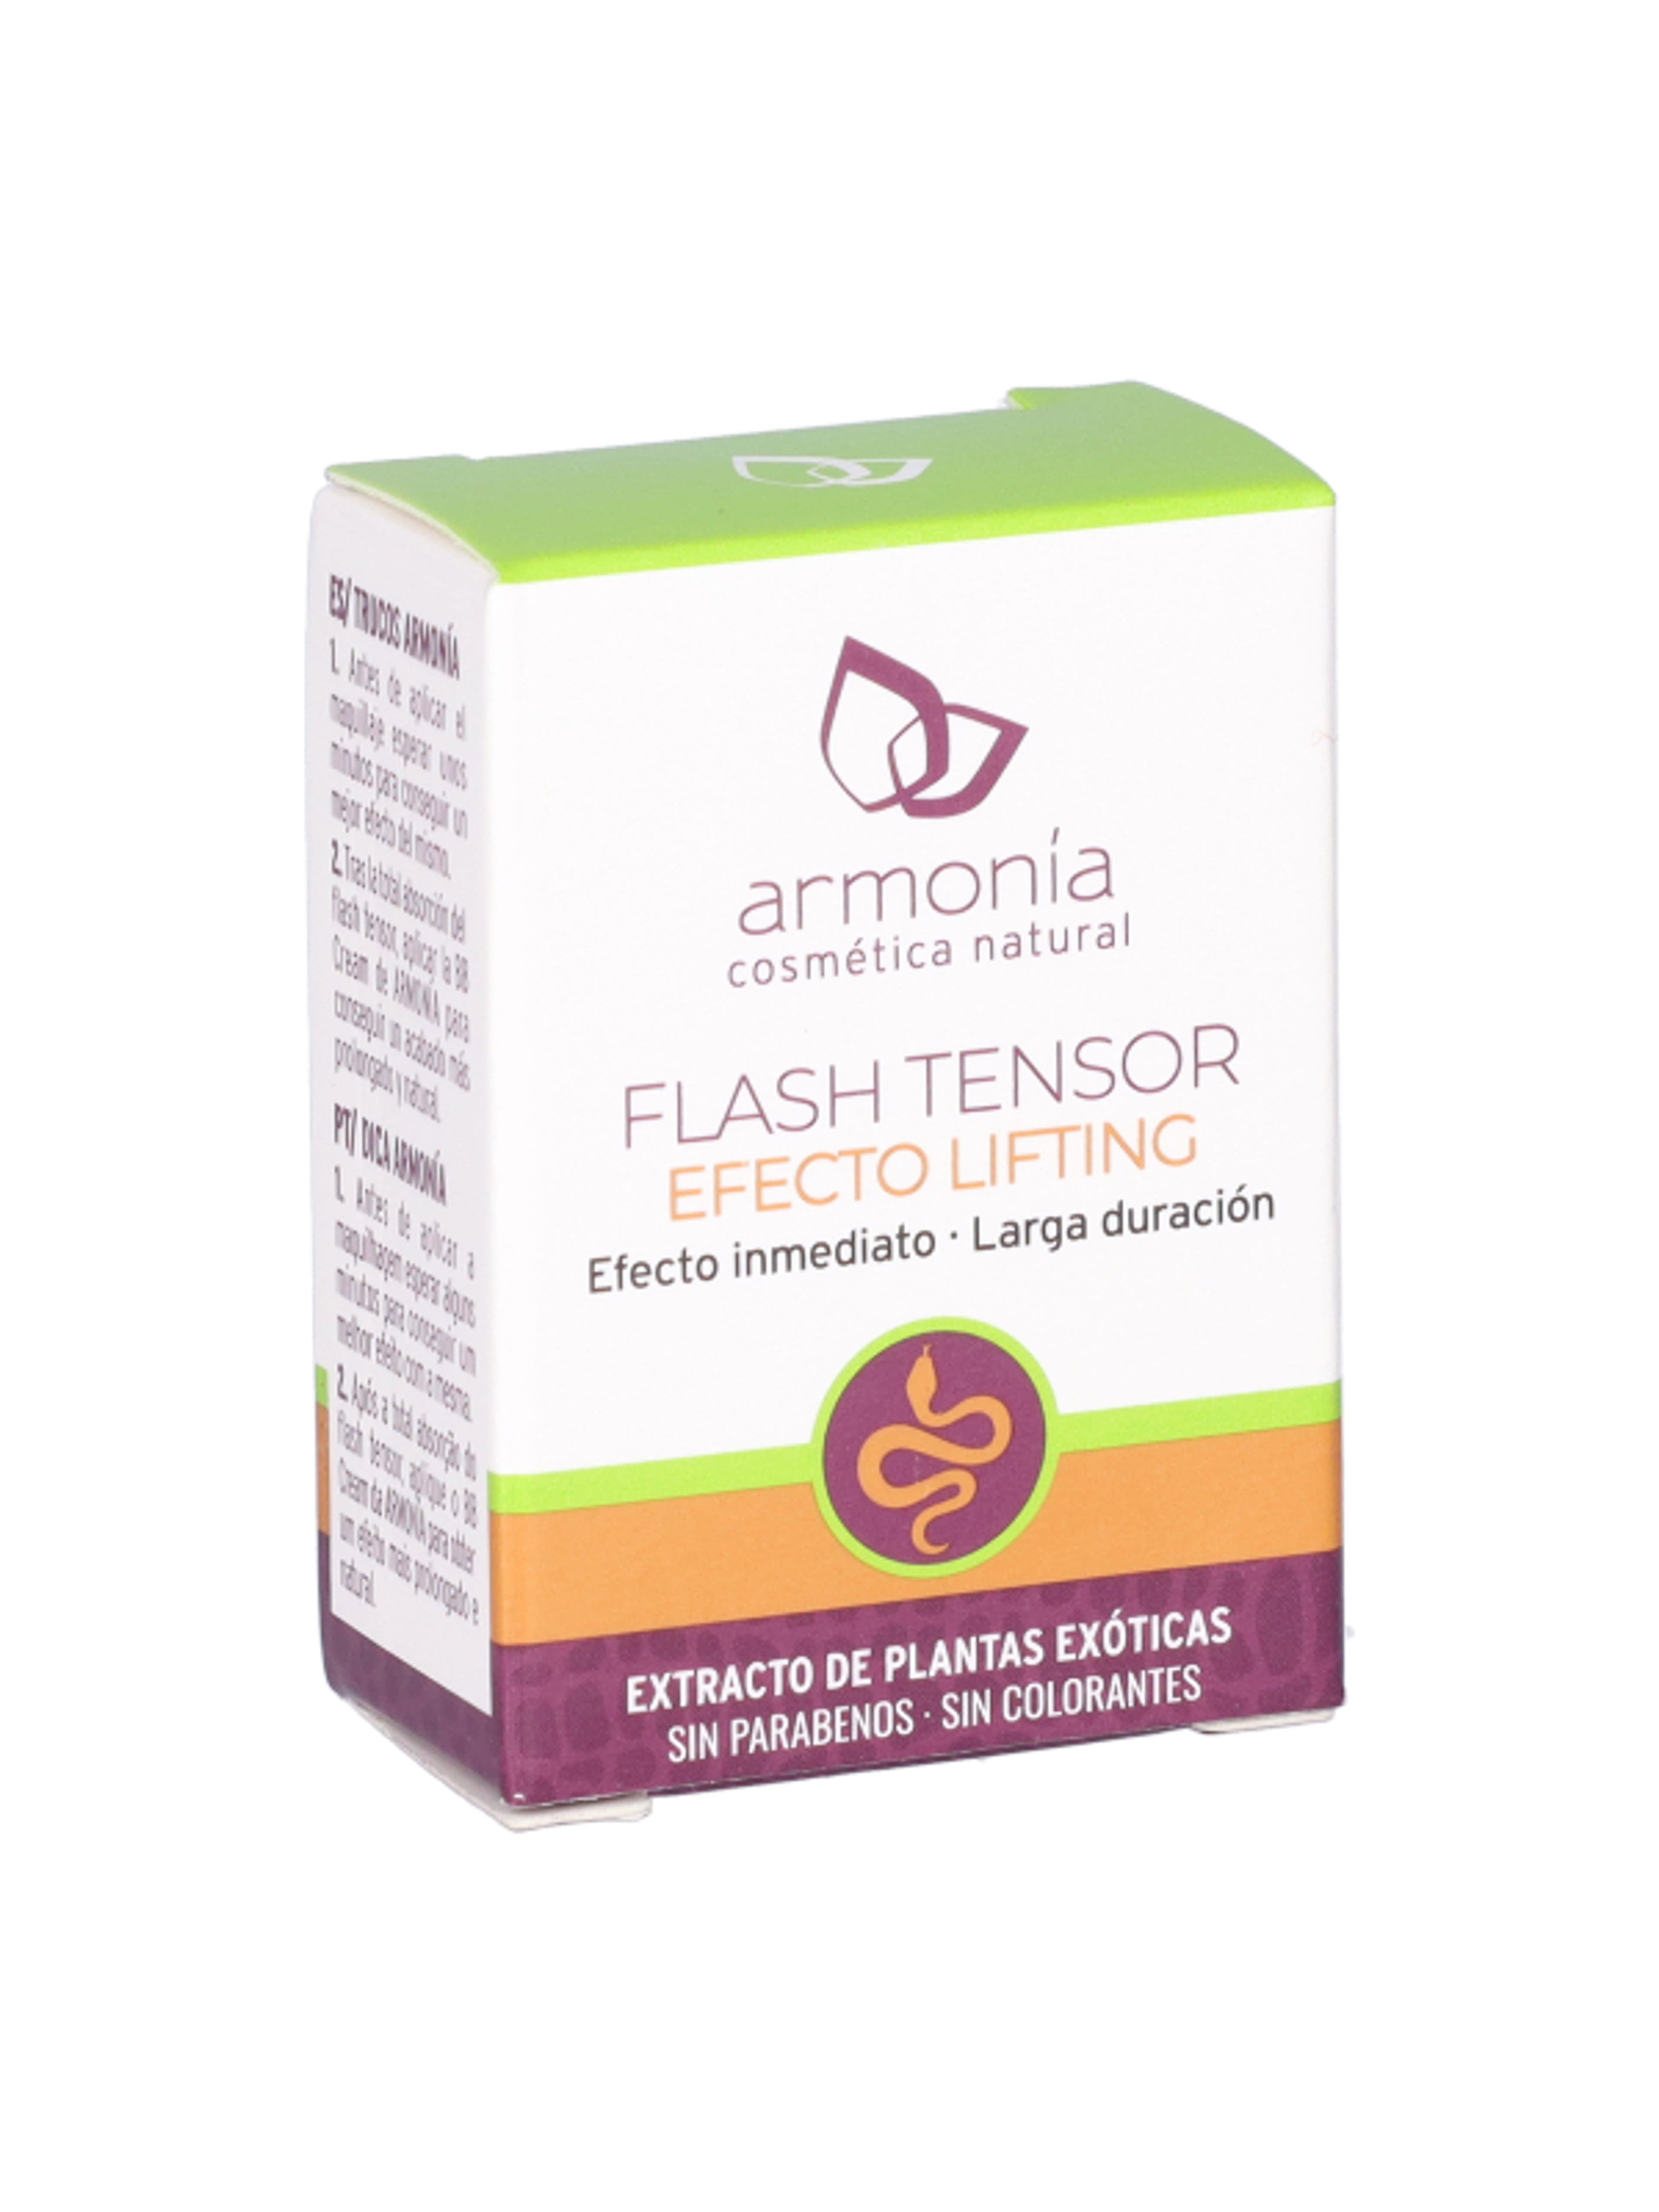 Armonia flash tensor villámfeszesítő lifting szérum - 4 ml